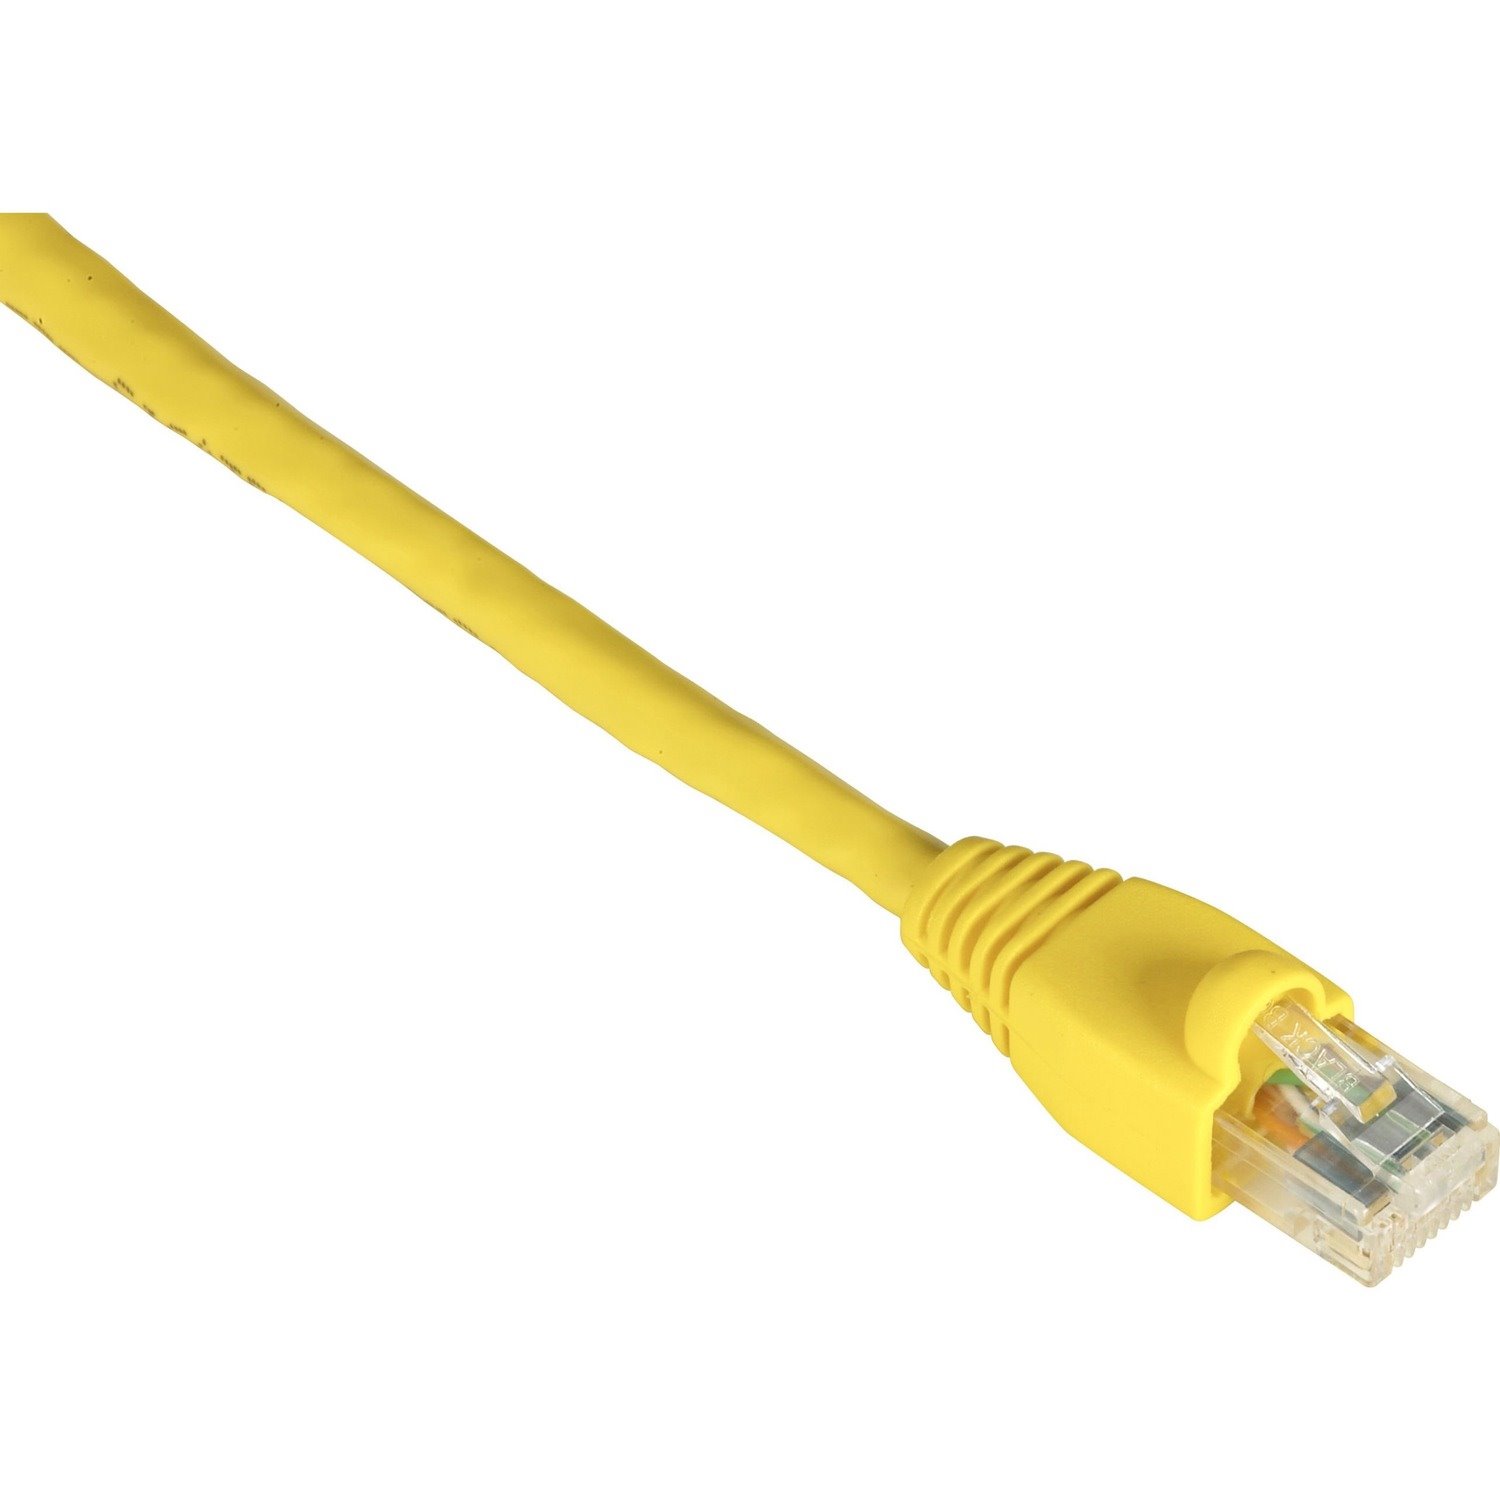 Black Box GigaTrue 91.44 cm Category 6 Network Cable